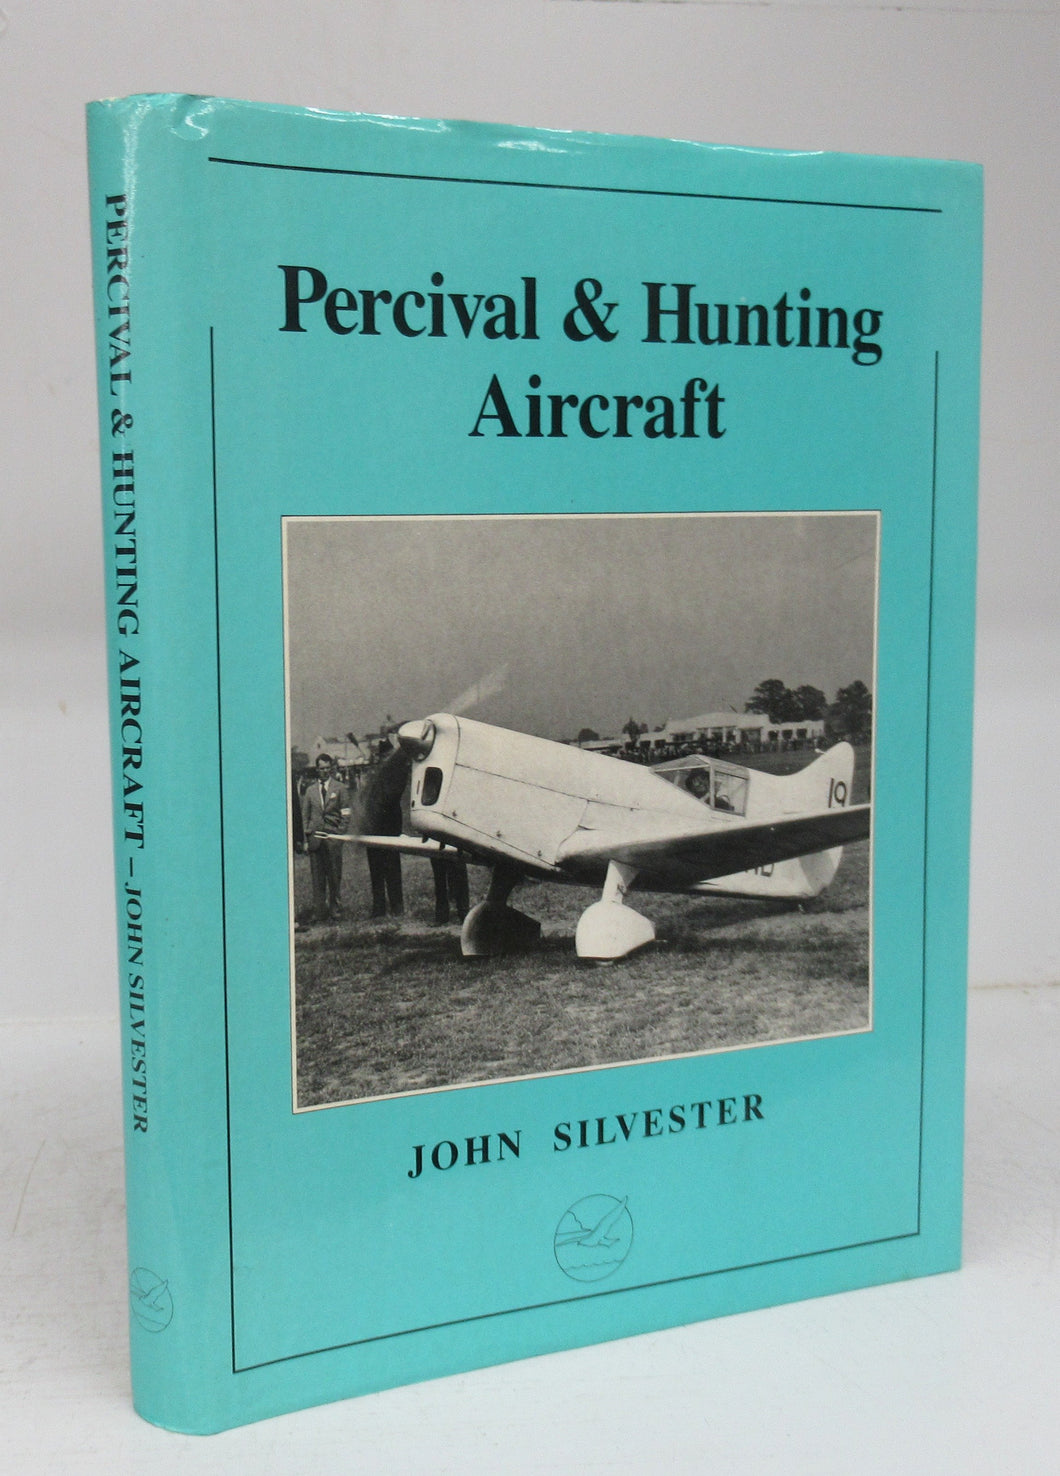 Percival & Hunting Aircraft